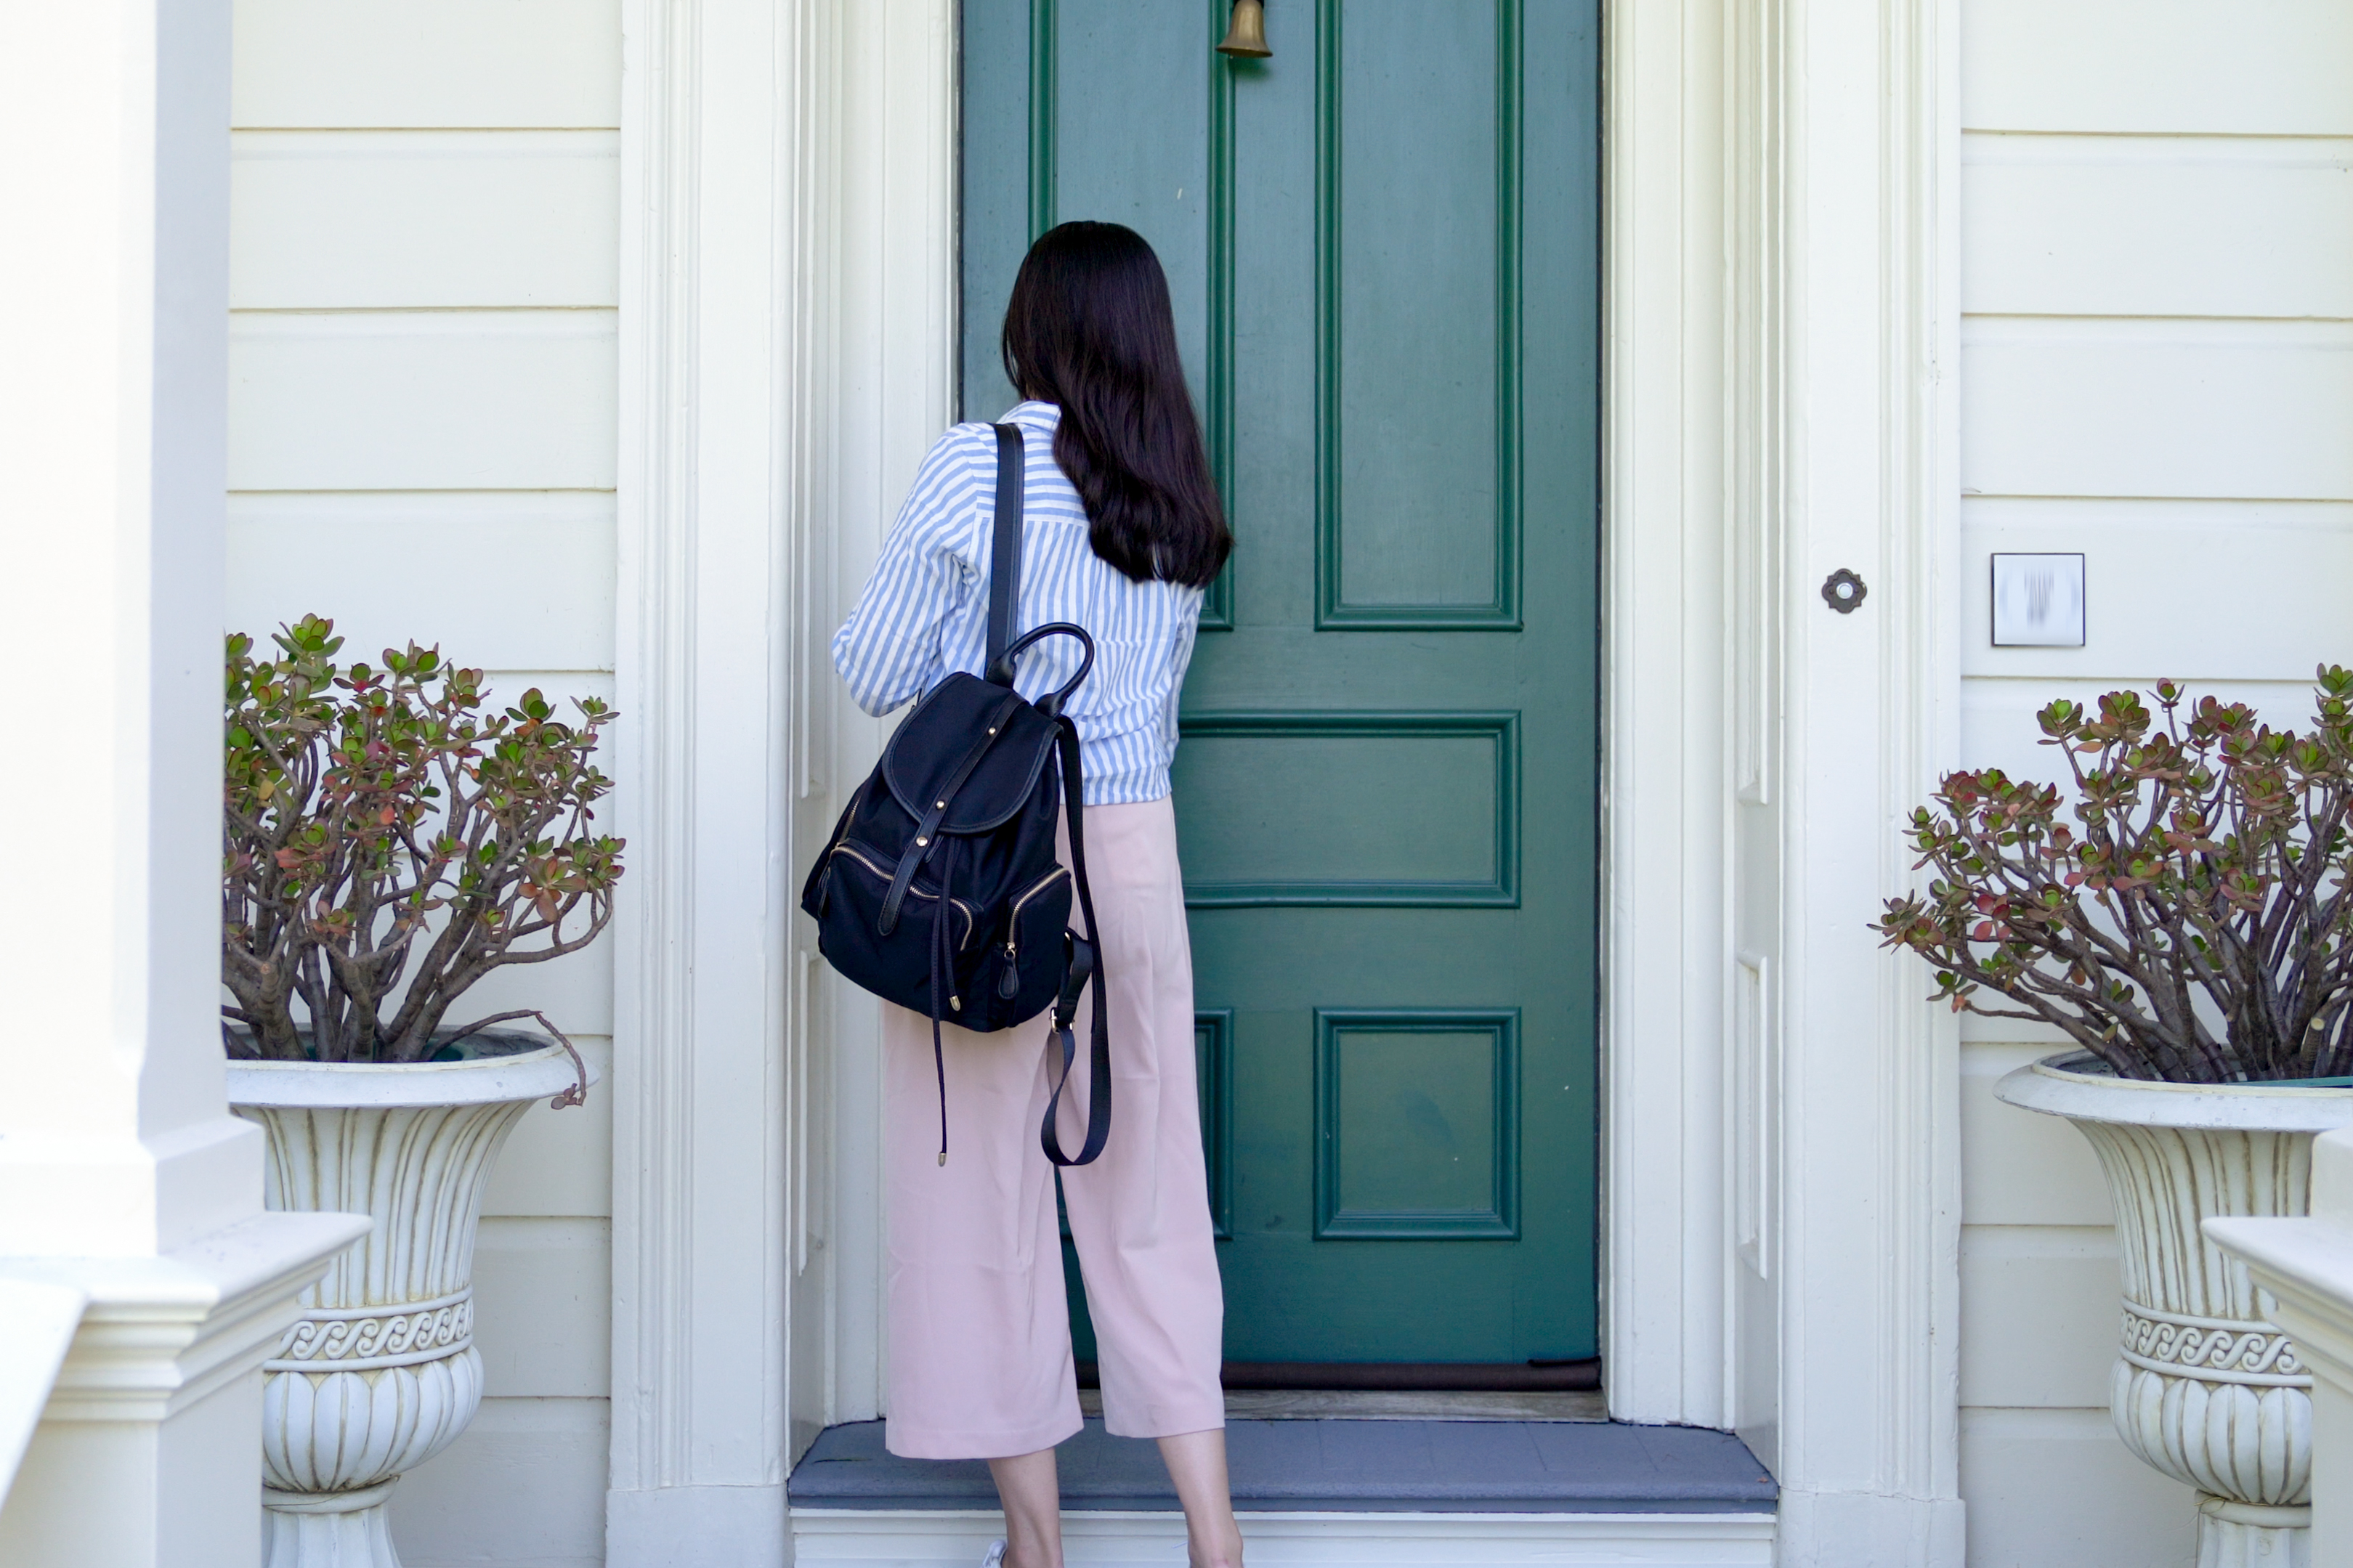 Une étudiante transportant un sac à dos pour rentrer chez elle | Source : Shutterstock